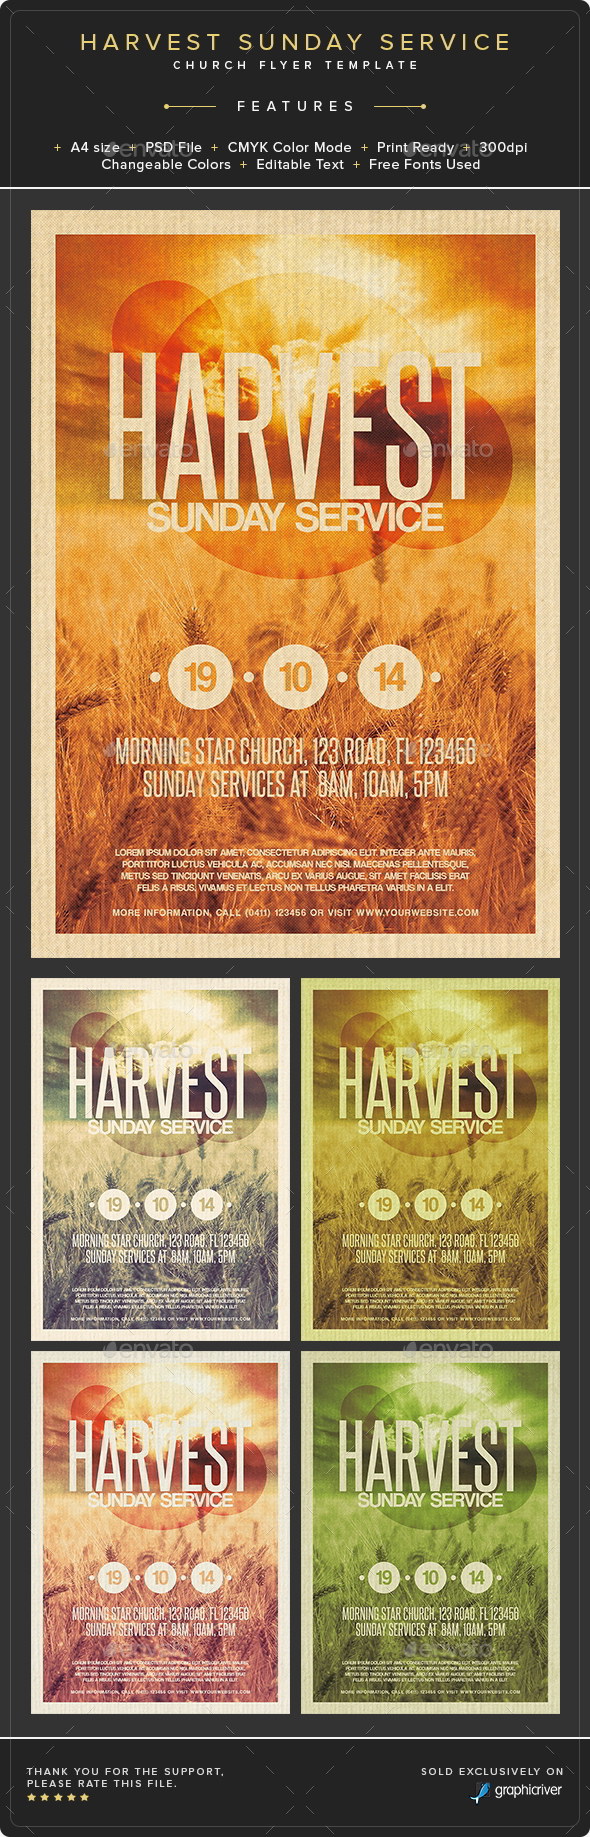 Harvest Sunday Service Flyer Template